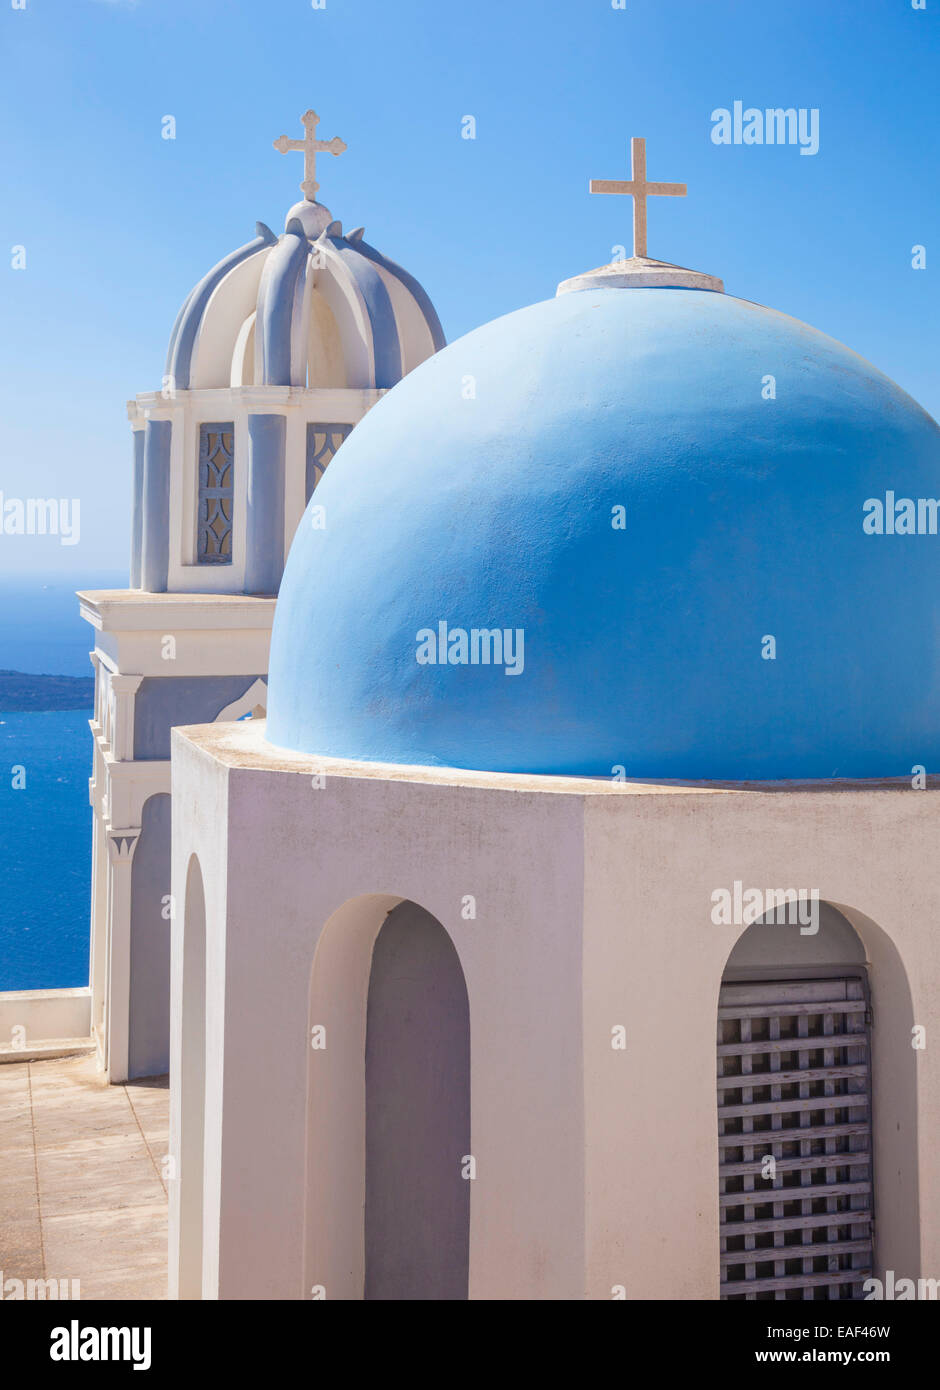 Les clochers de l'Église orthodoxe avec vue sur la caldeira de Fira Santorini Santorini Cyclades Grèce Mer Egée eu Europe Banque D'Images